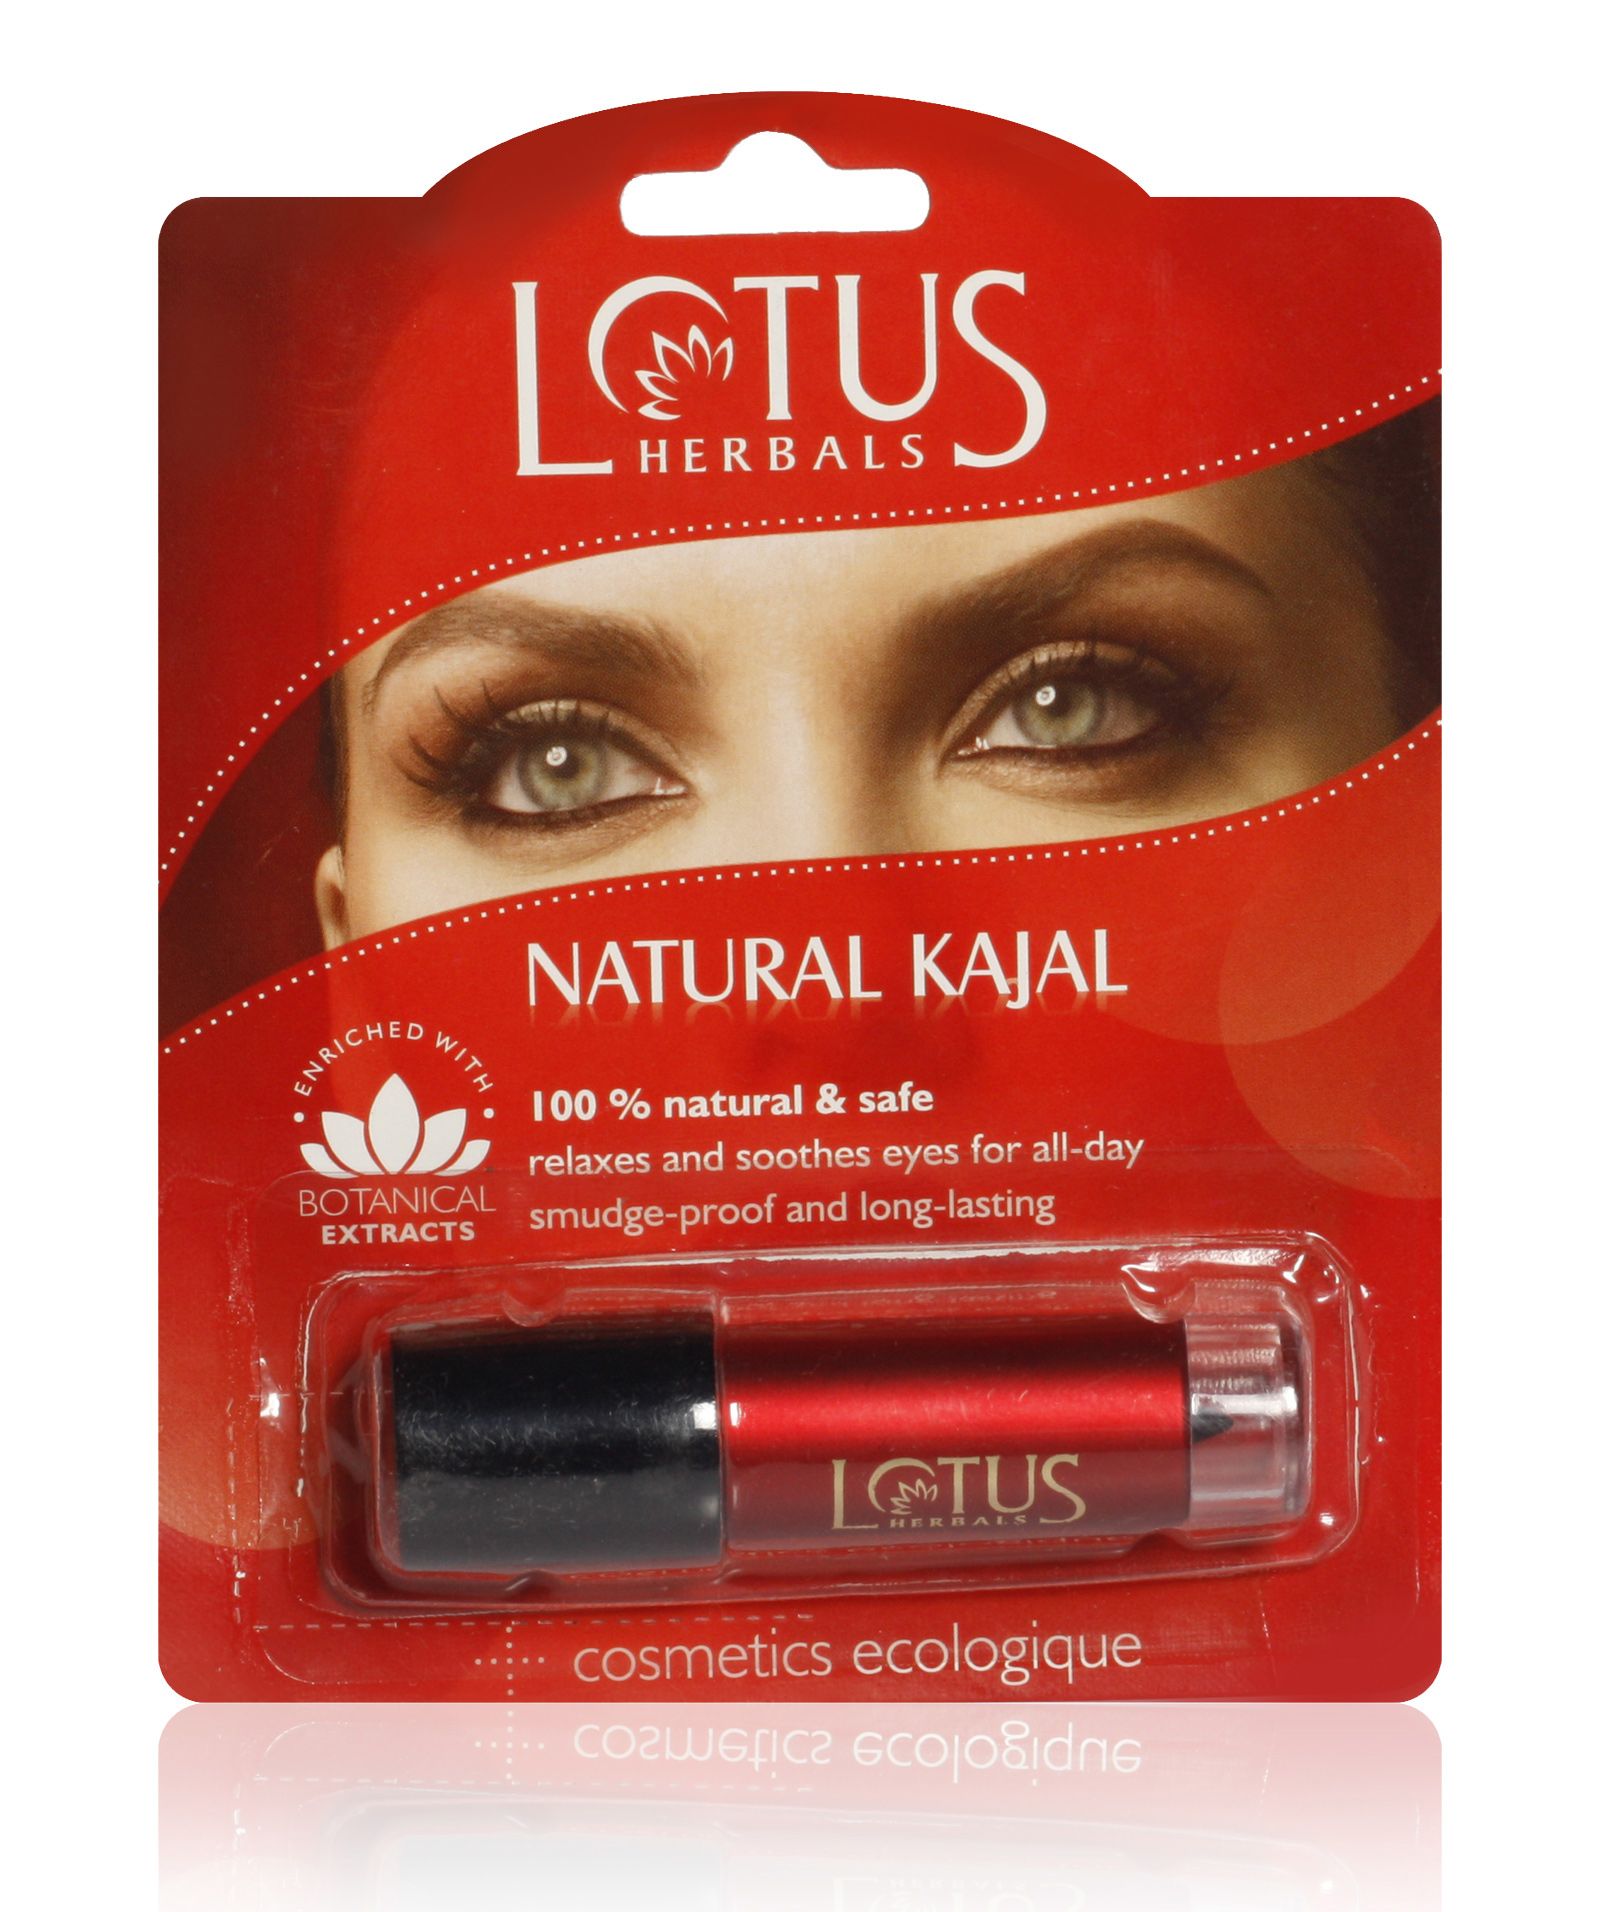 Lotus Herbals Natural Kajal